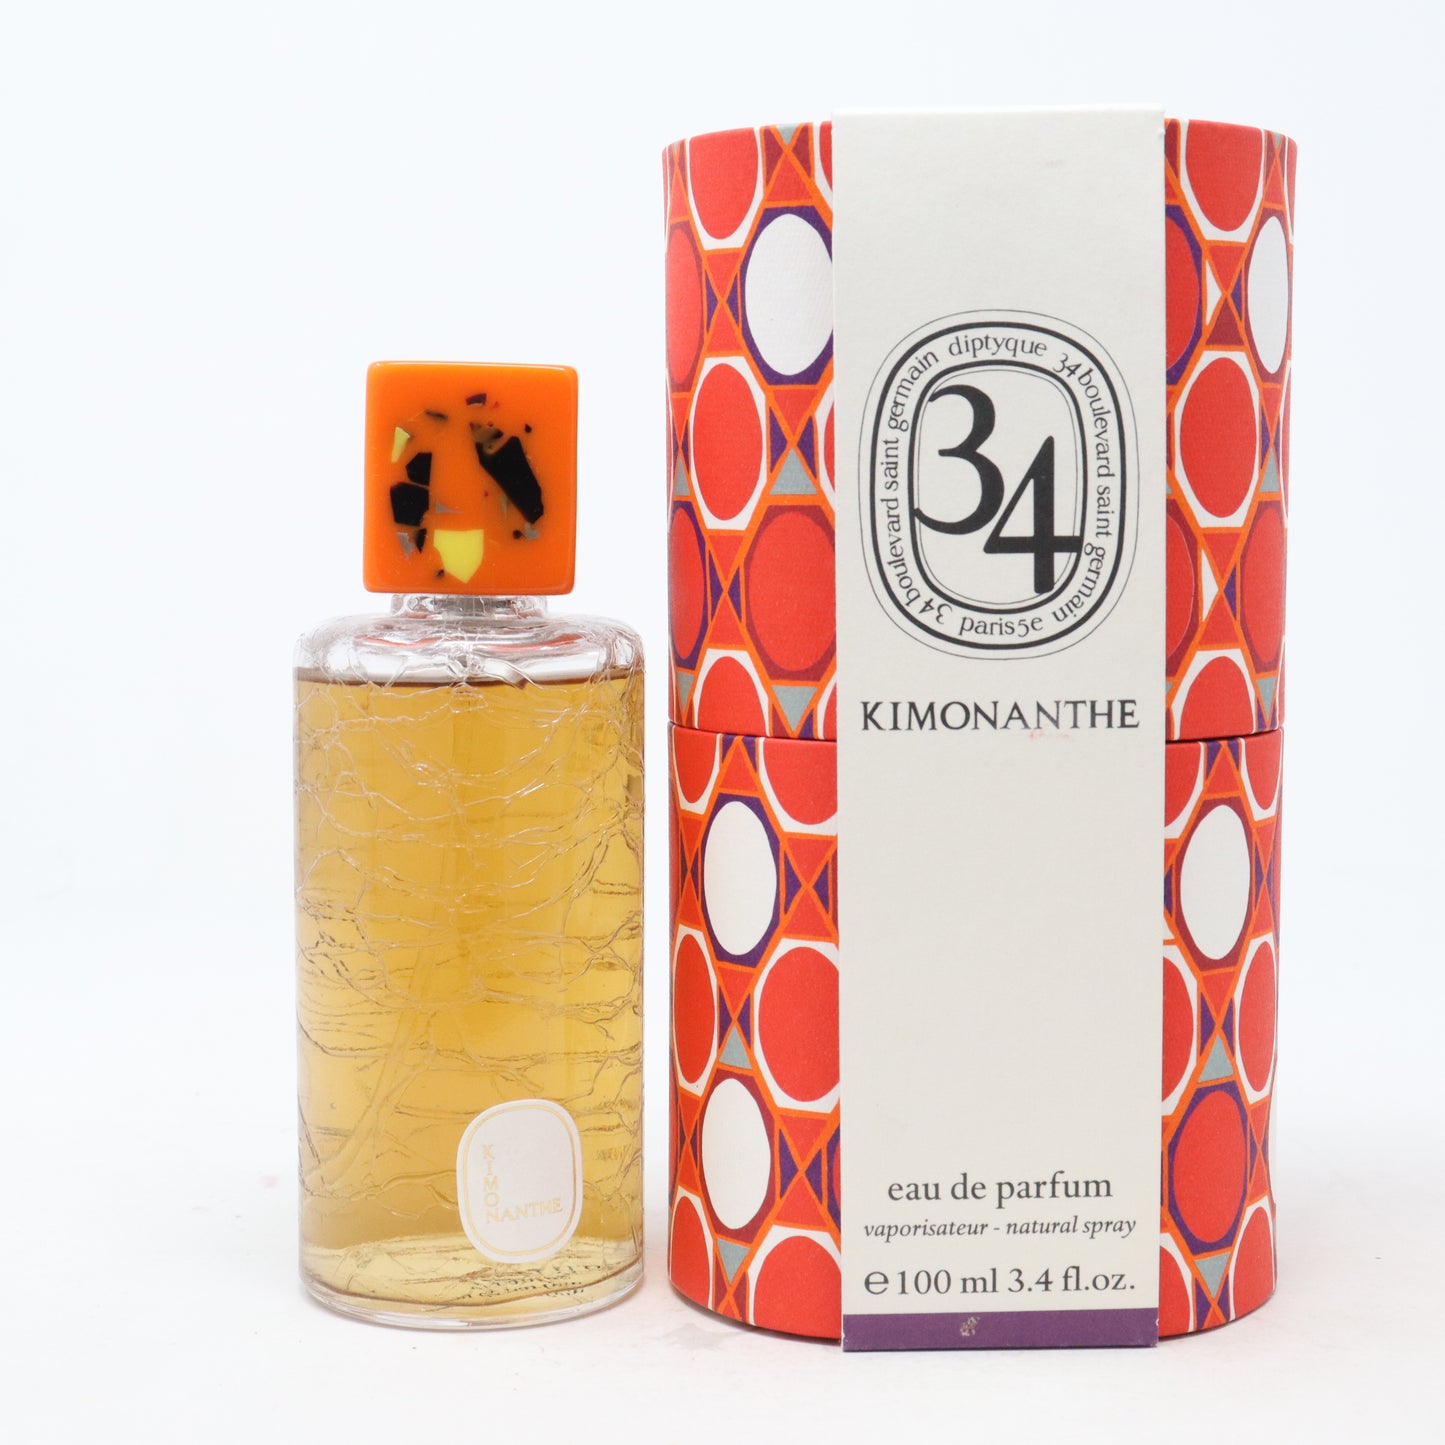 34 Kimonanthe Eau De Parfum 100 ml